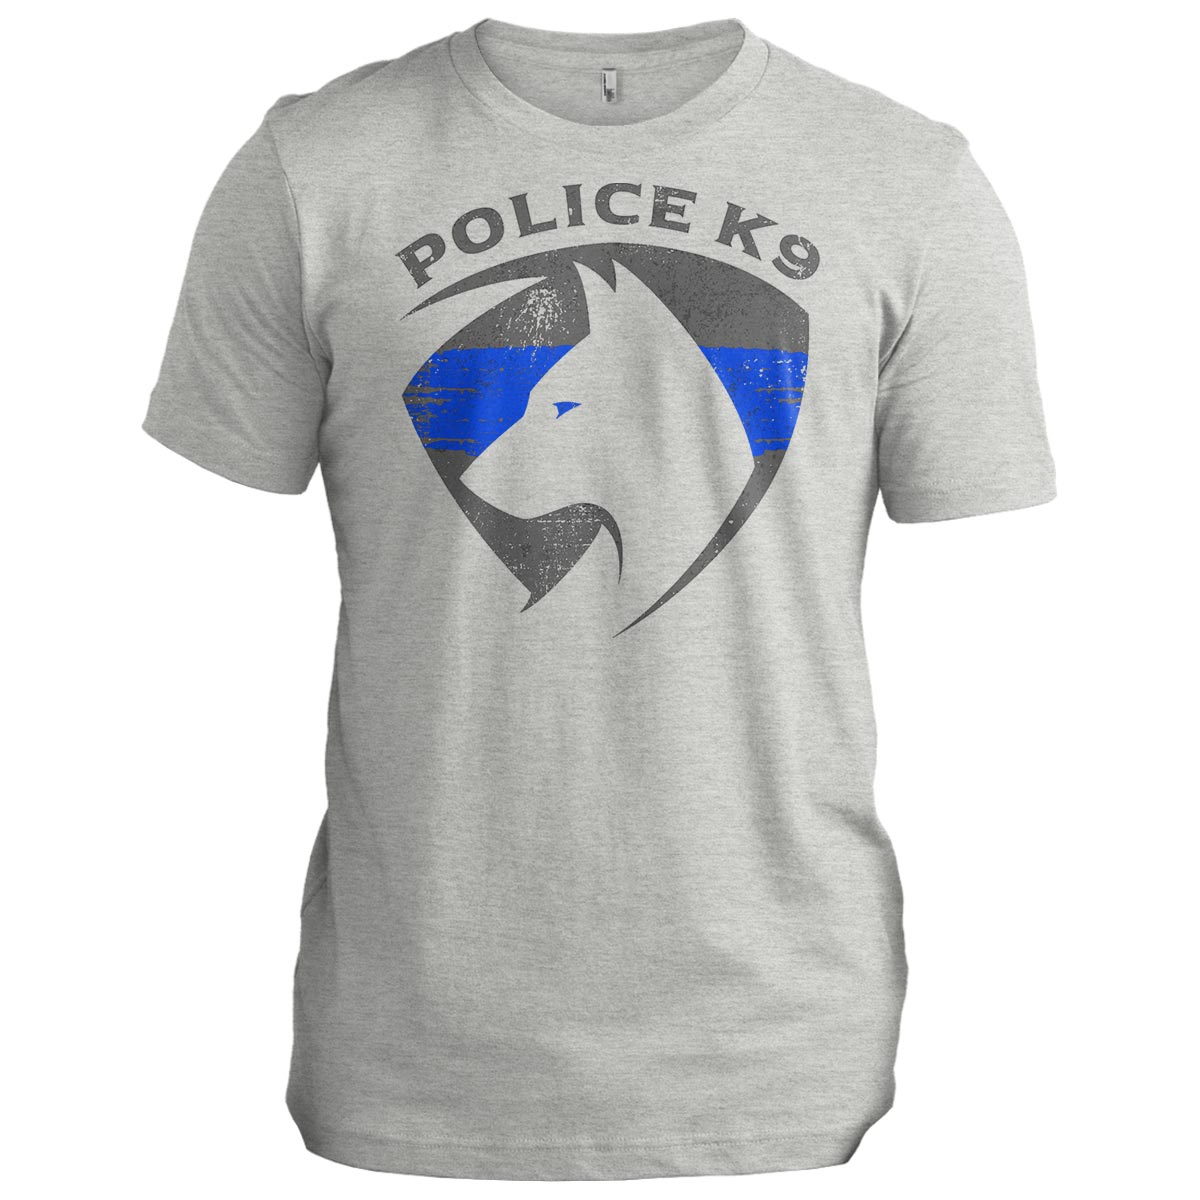 Police K9